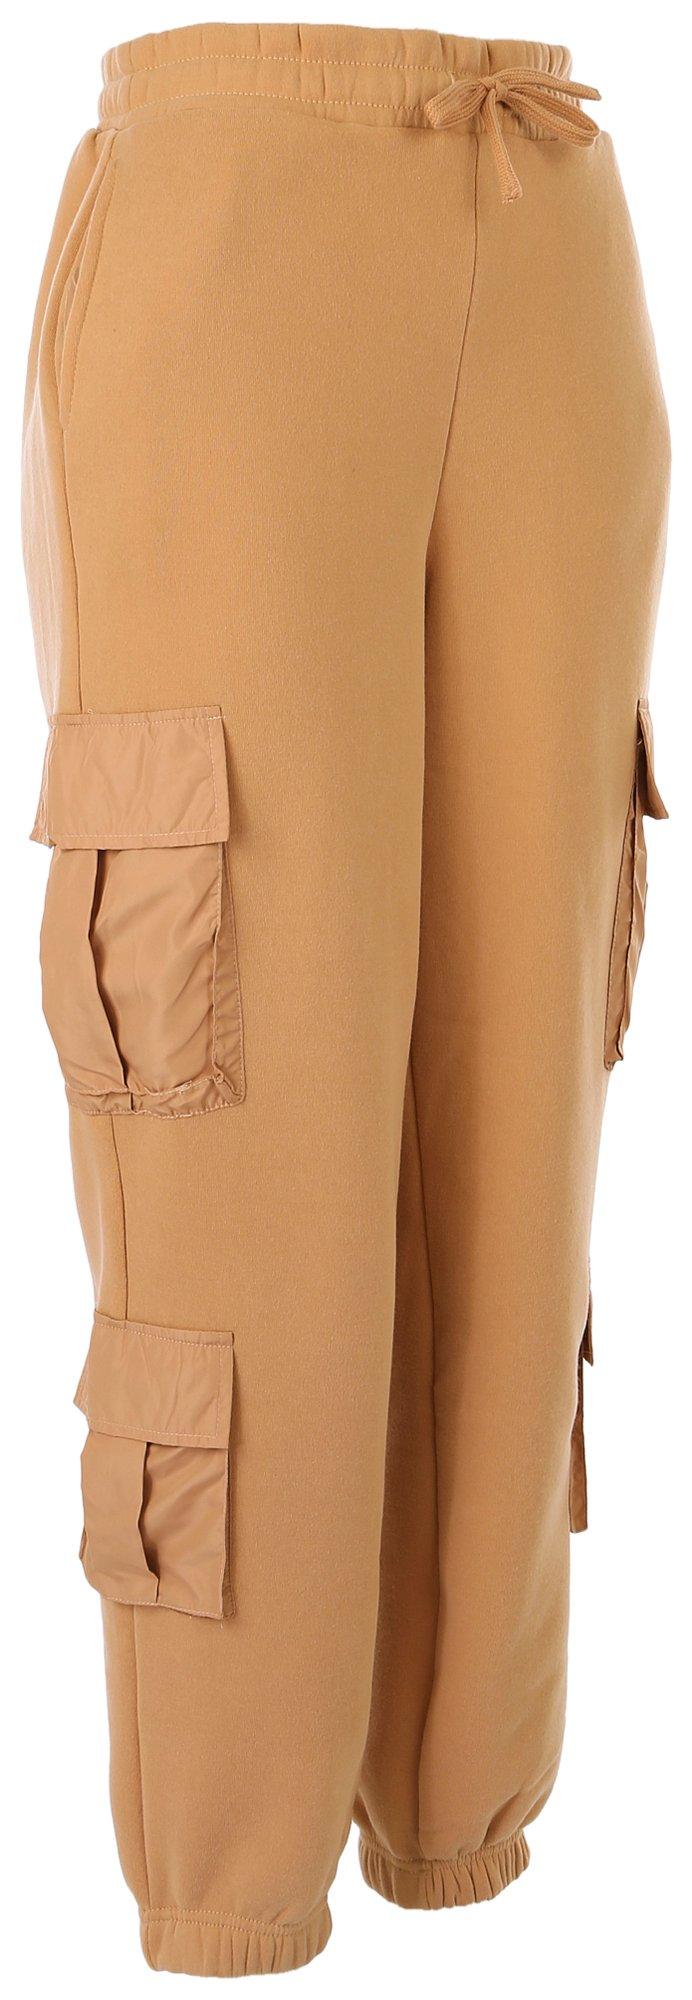 COPY - Allison Brittney 100% Cotton Women's Green Cargo Capri Pants Size 12